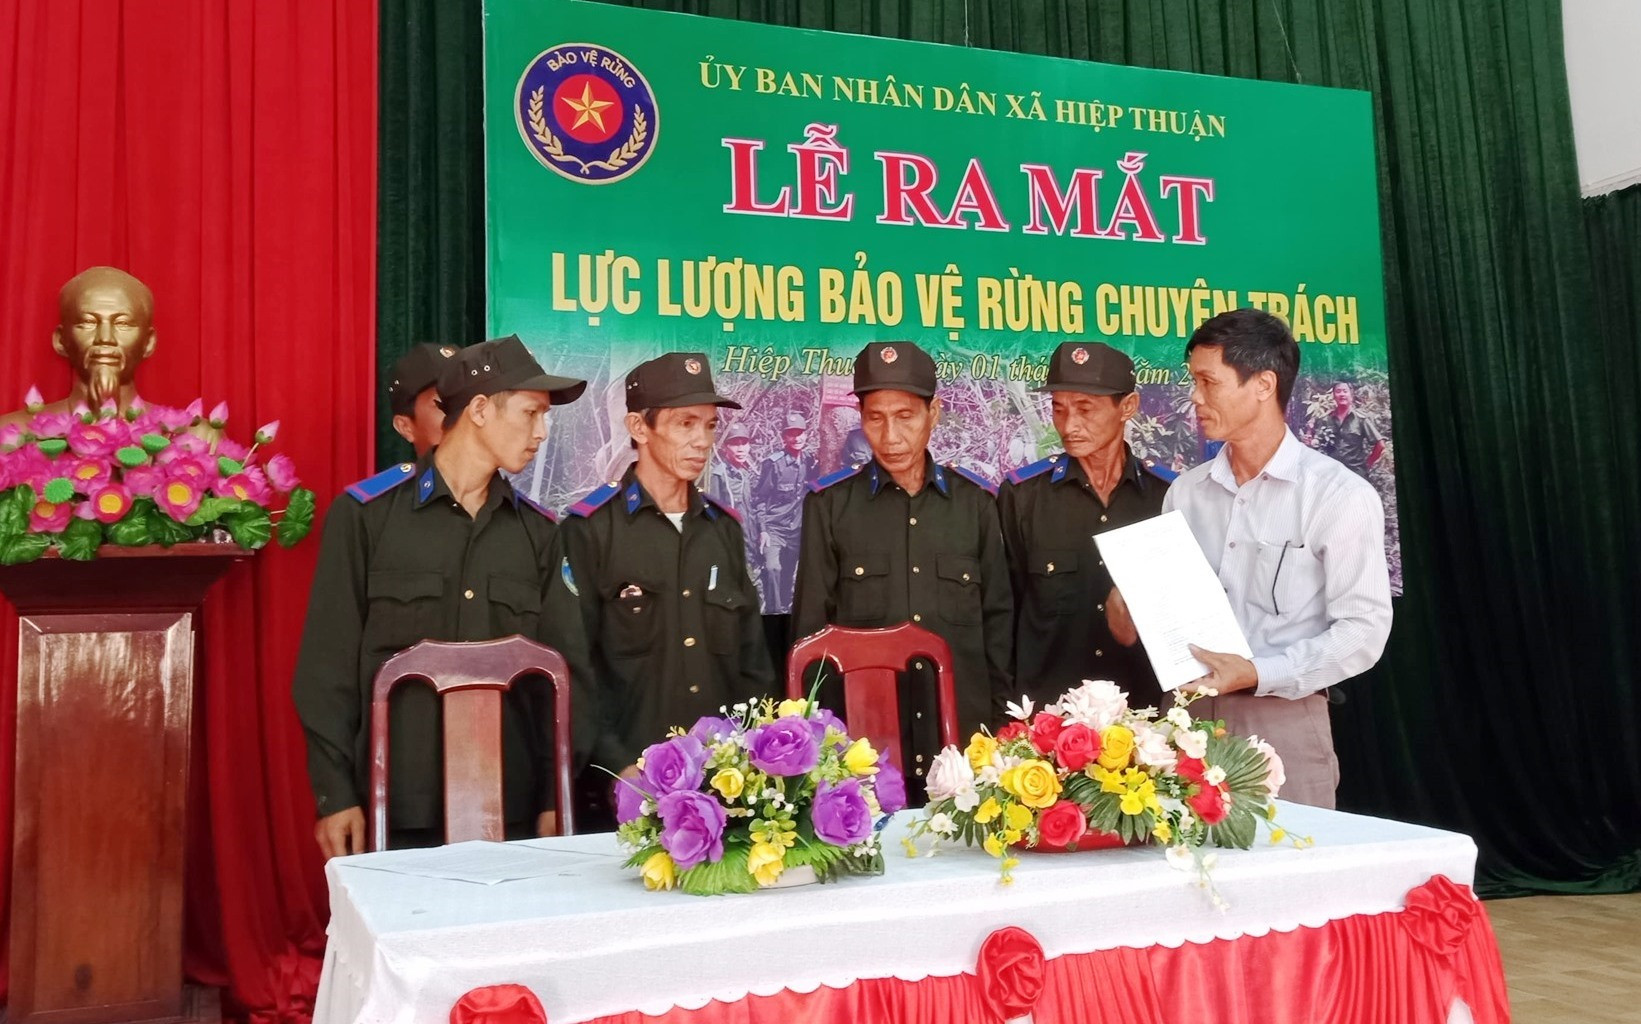 UBND xã Hiệp Thuận (Hiệp Đức) ra mắt lực lượng bảo vệ rừng chuyên trách.